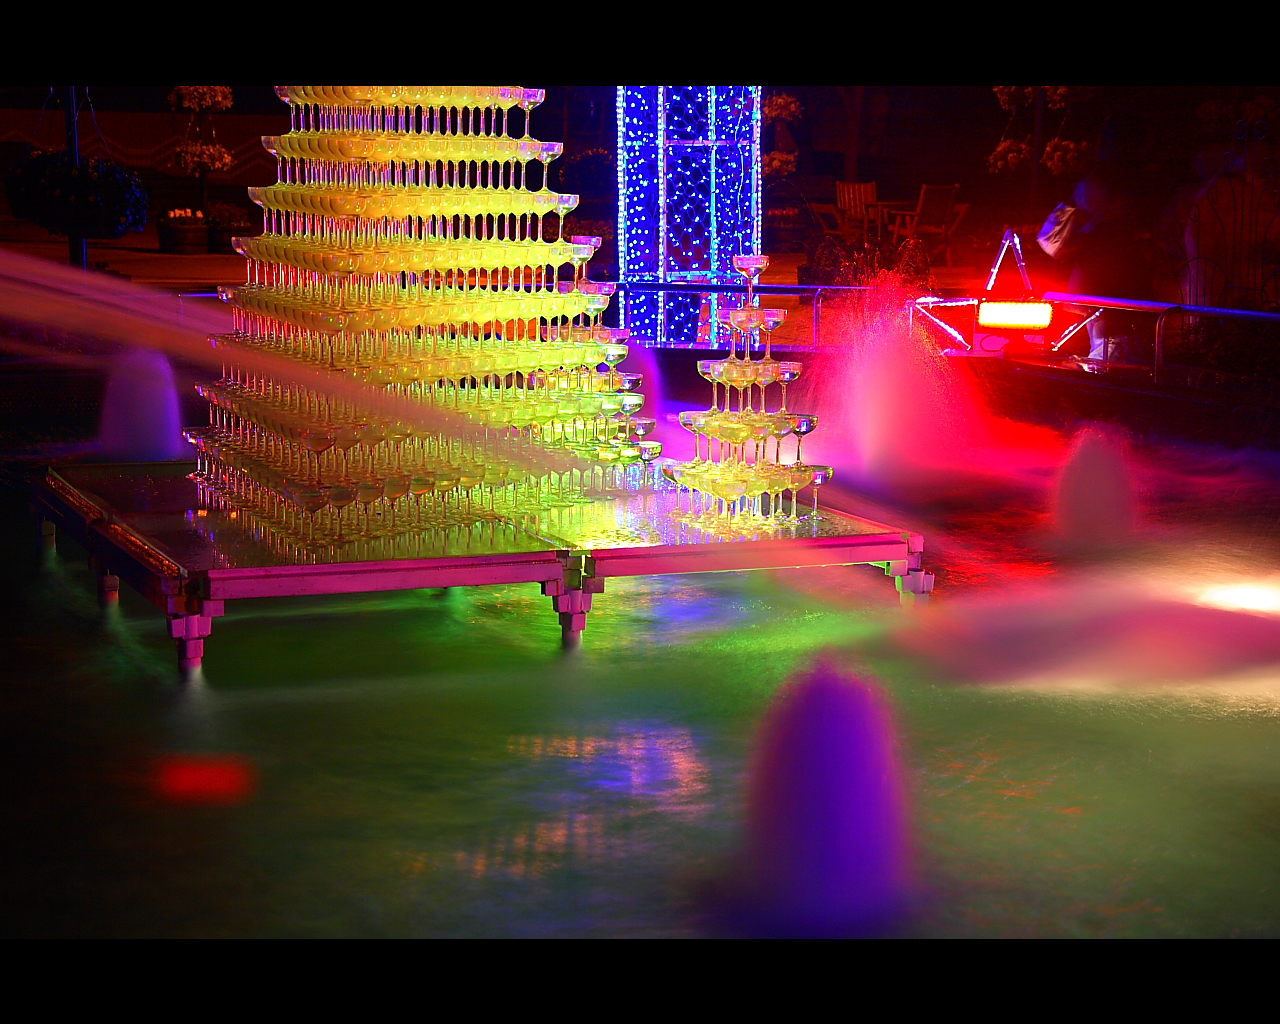 冬の光物語イルミネーション噴水とガラスの樹1280x1024サイズ　左クリックで木曽三川公園センター・冬の光物語イルミネーションへ右クリック背景に設定で壁紙へ